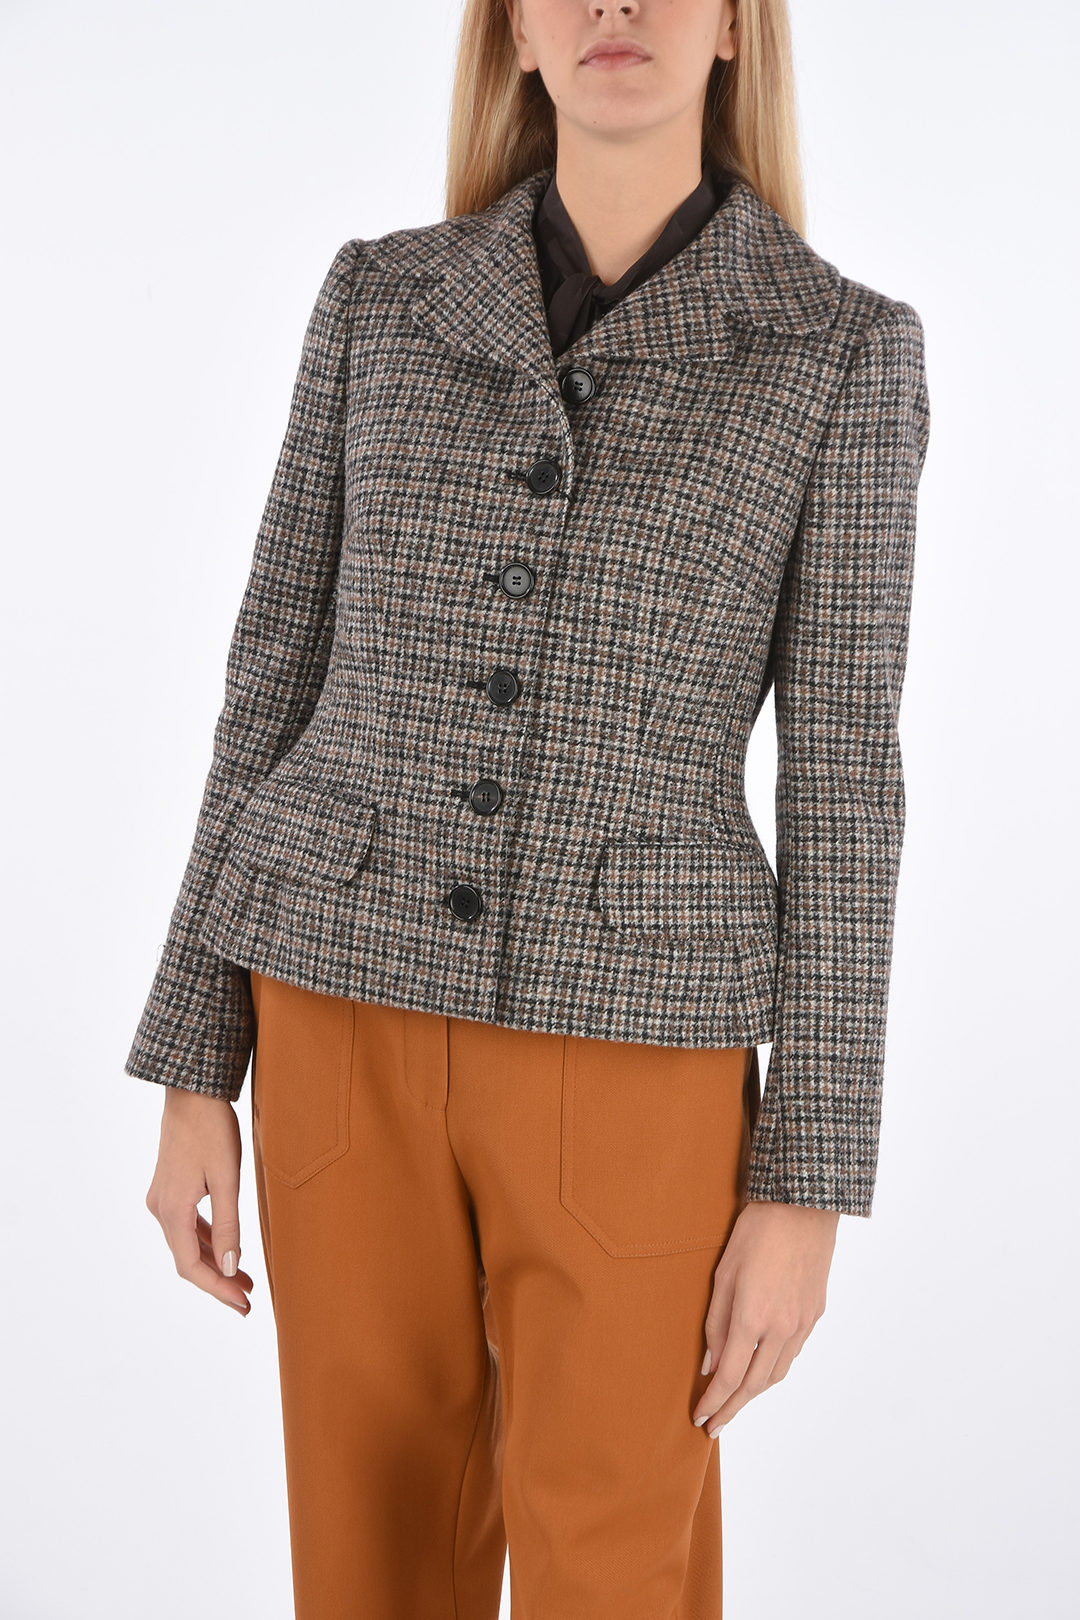 Belted Plaid Blazer & Louis Vuitton Scarf - Meagan's Moda